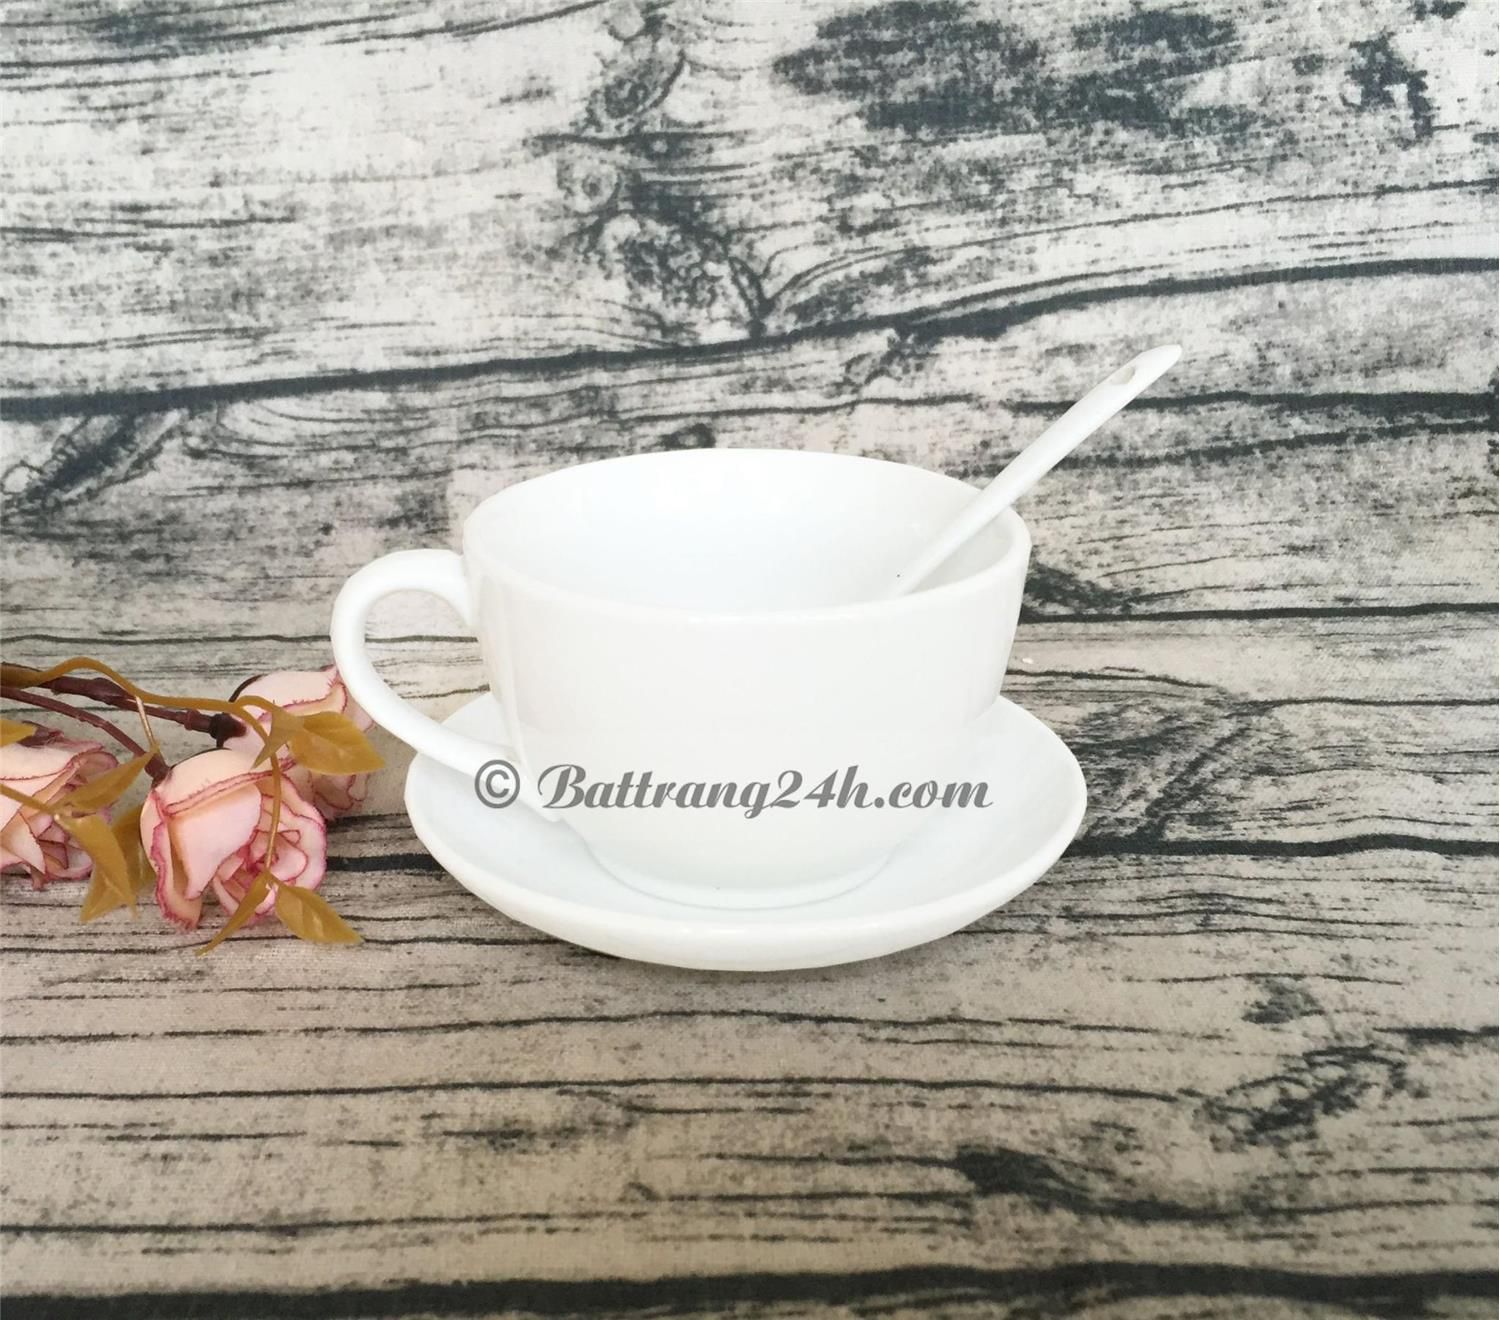 Tách cafe sứ trắng Bát Tràng - Top sản phẩm được yêu thích nhất tại Battrang24h